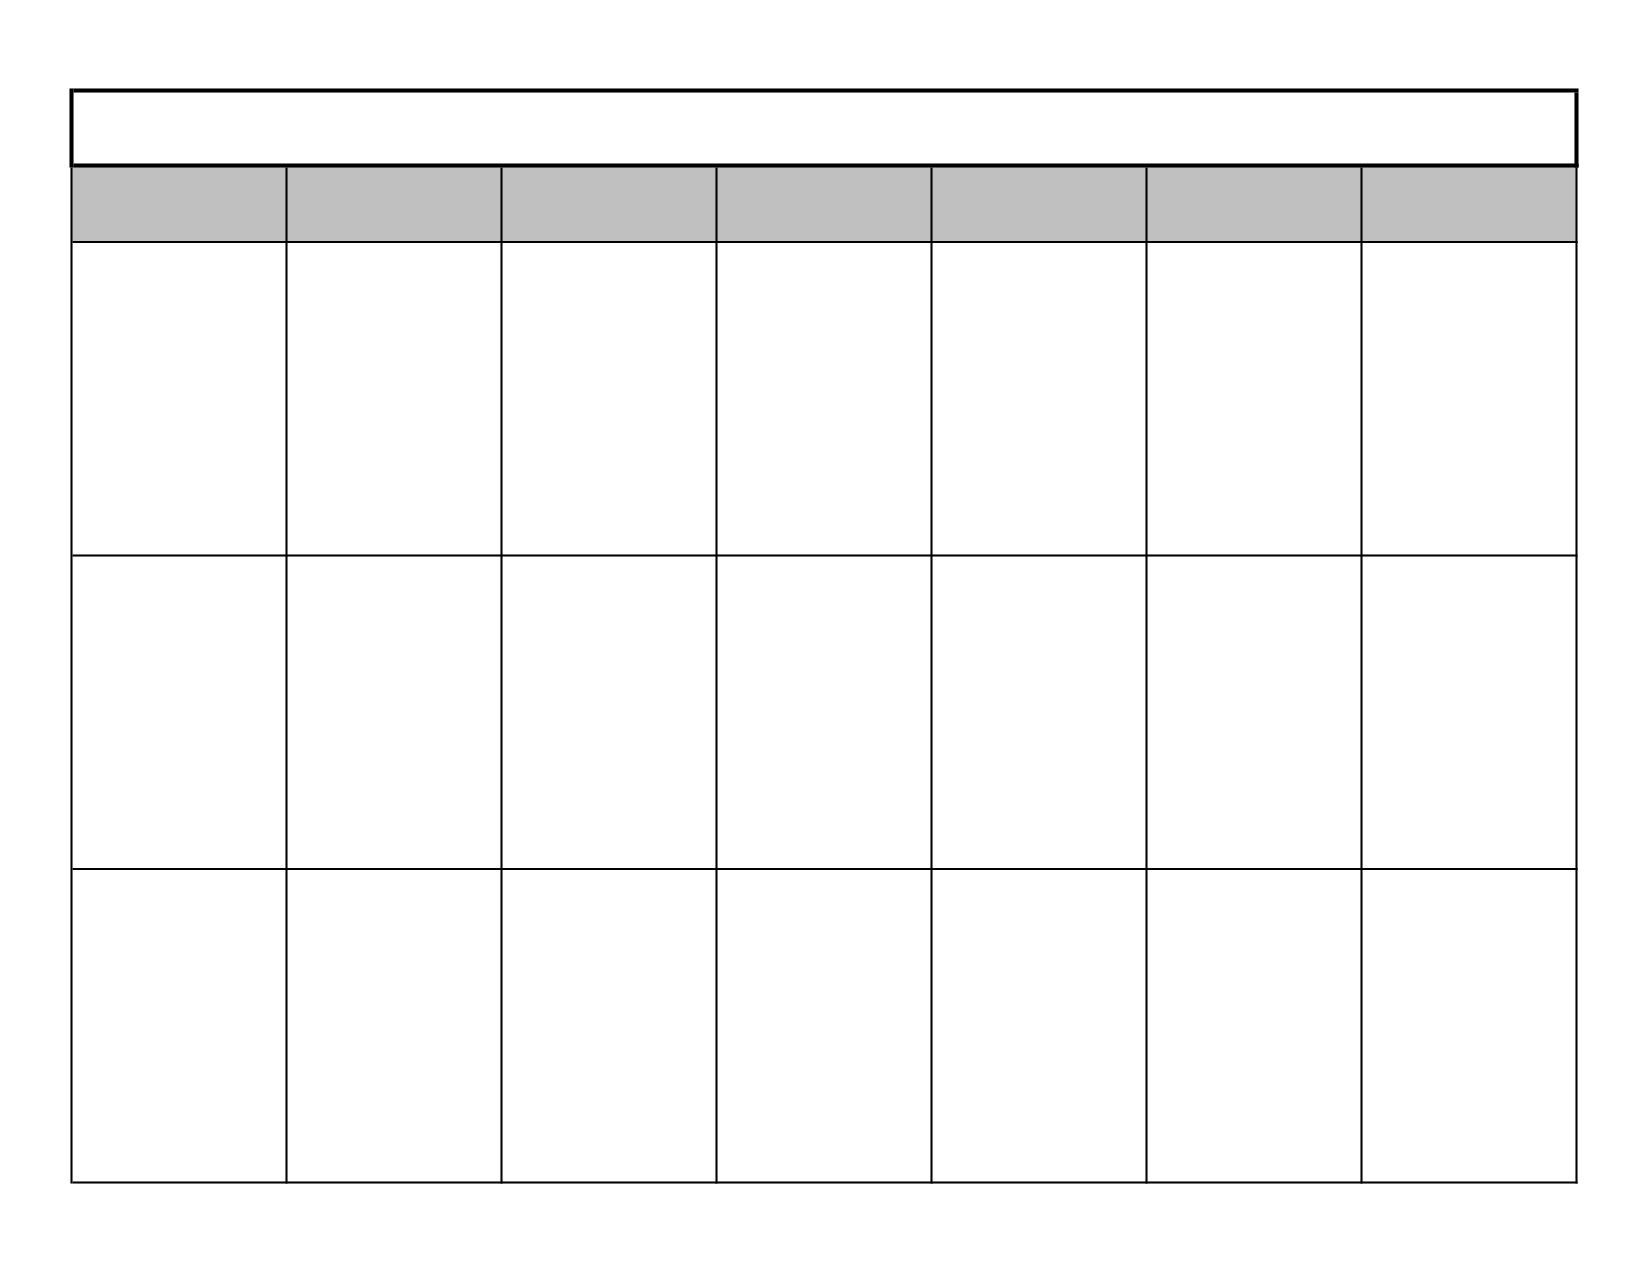 2 Week Schedule Template Printable Calendar Template Printable